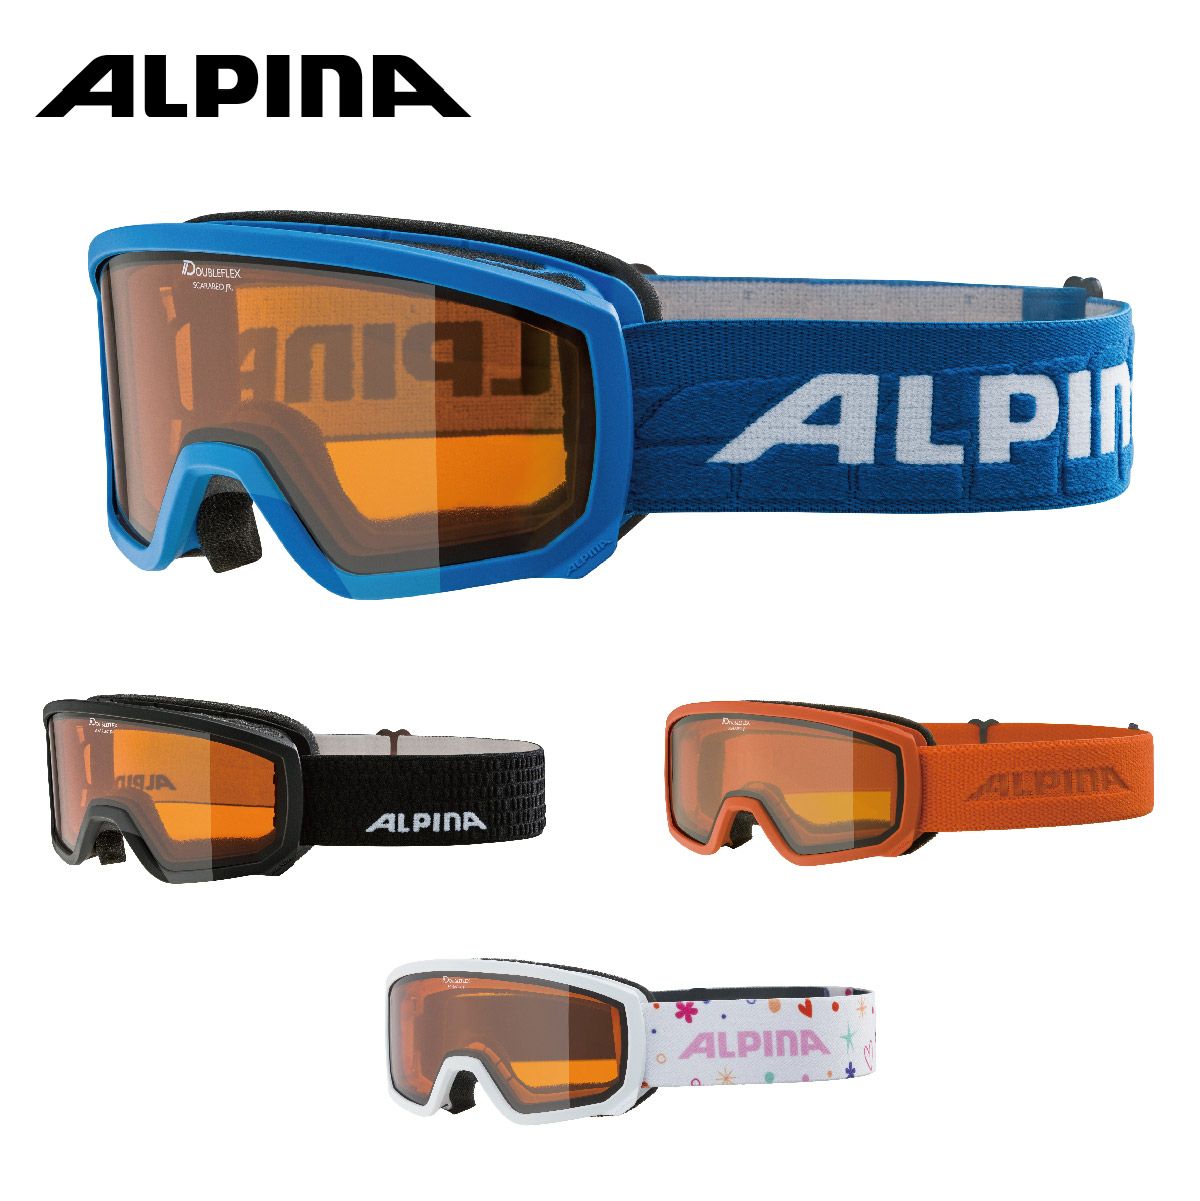 ALPINA(アルピナ) スキースノーボードゴーグル ユニセックス ハイコンミラーレンズ くもり止め メガネ使用可 DOUBLE JACK